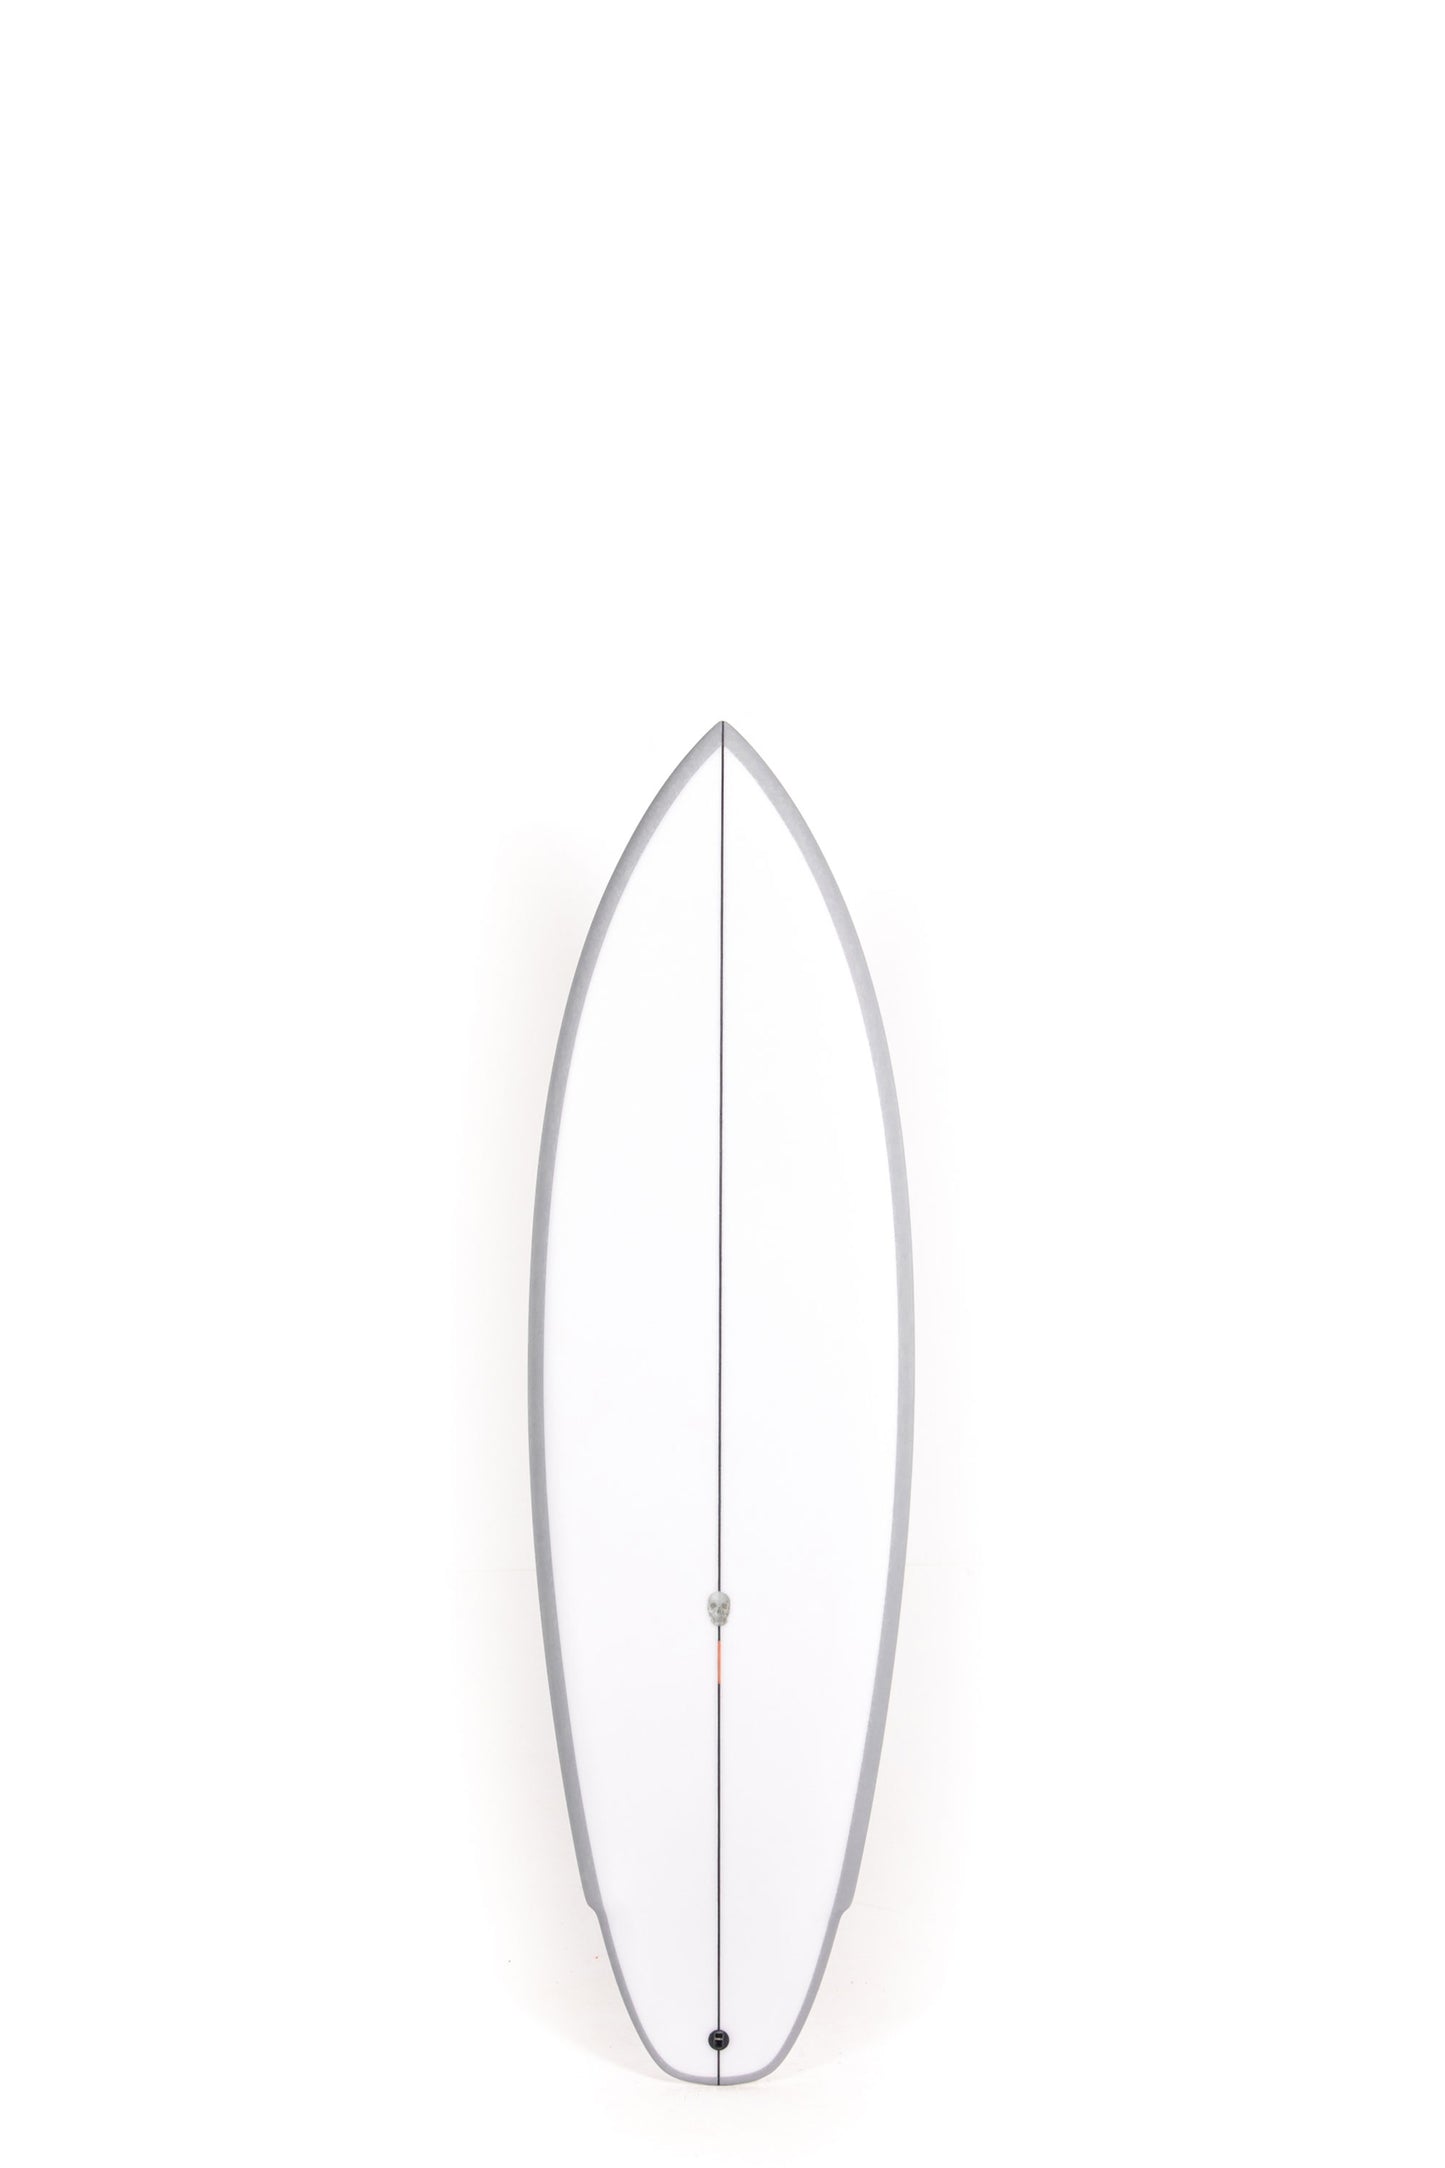 
                  
                    Christenson Surfboards - LANE SPLITTER - 5'9" x 19 7/8 x 2 5/8 - CX05823
                  
                